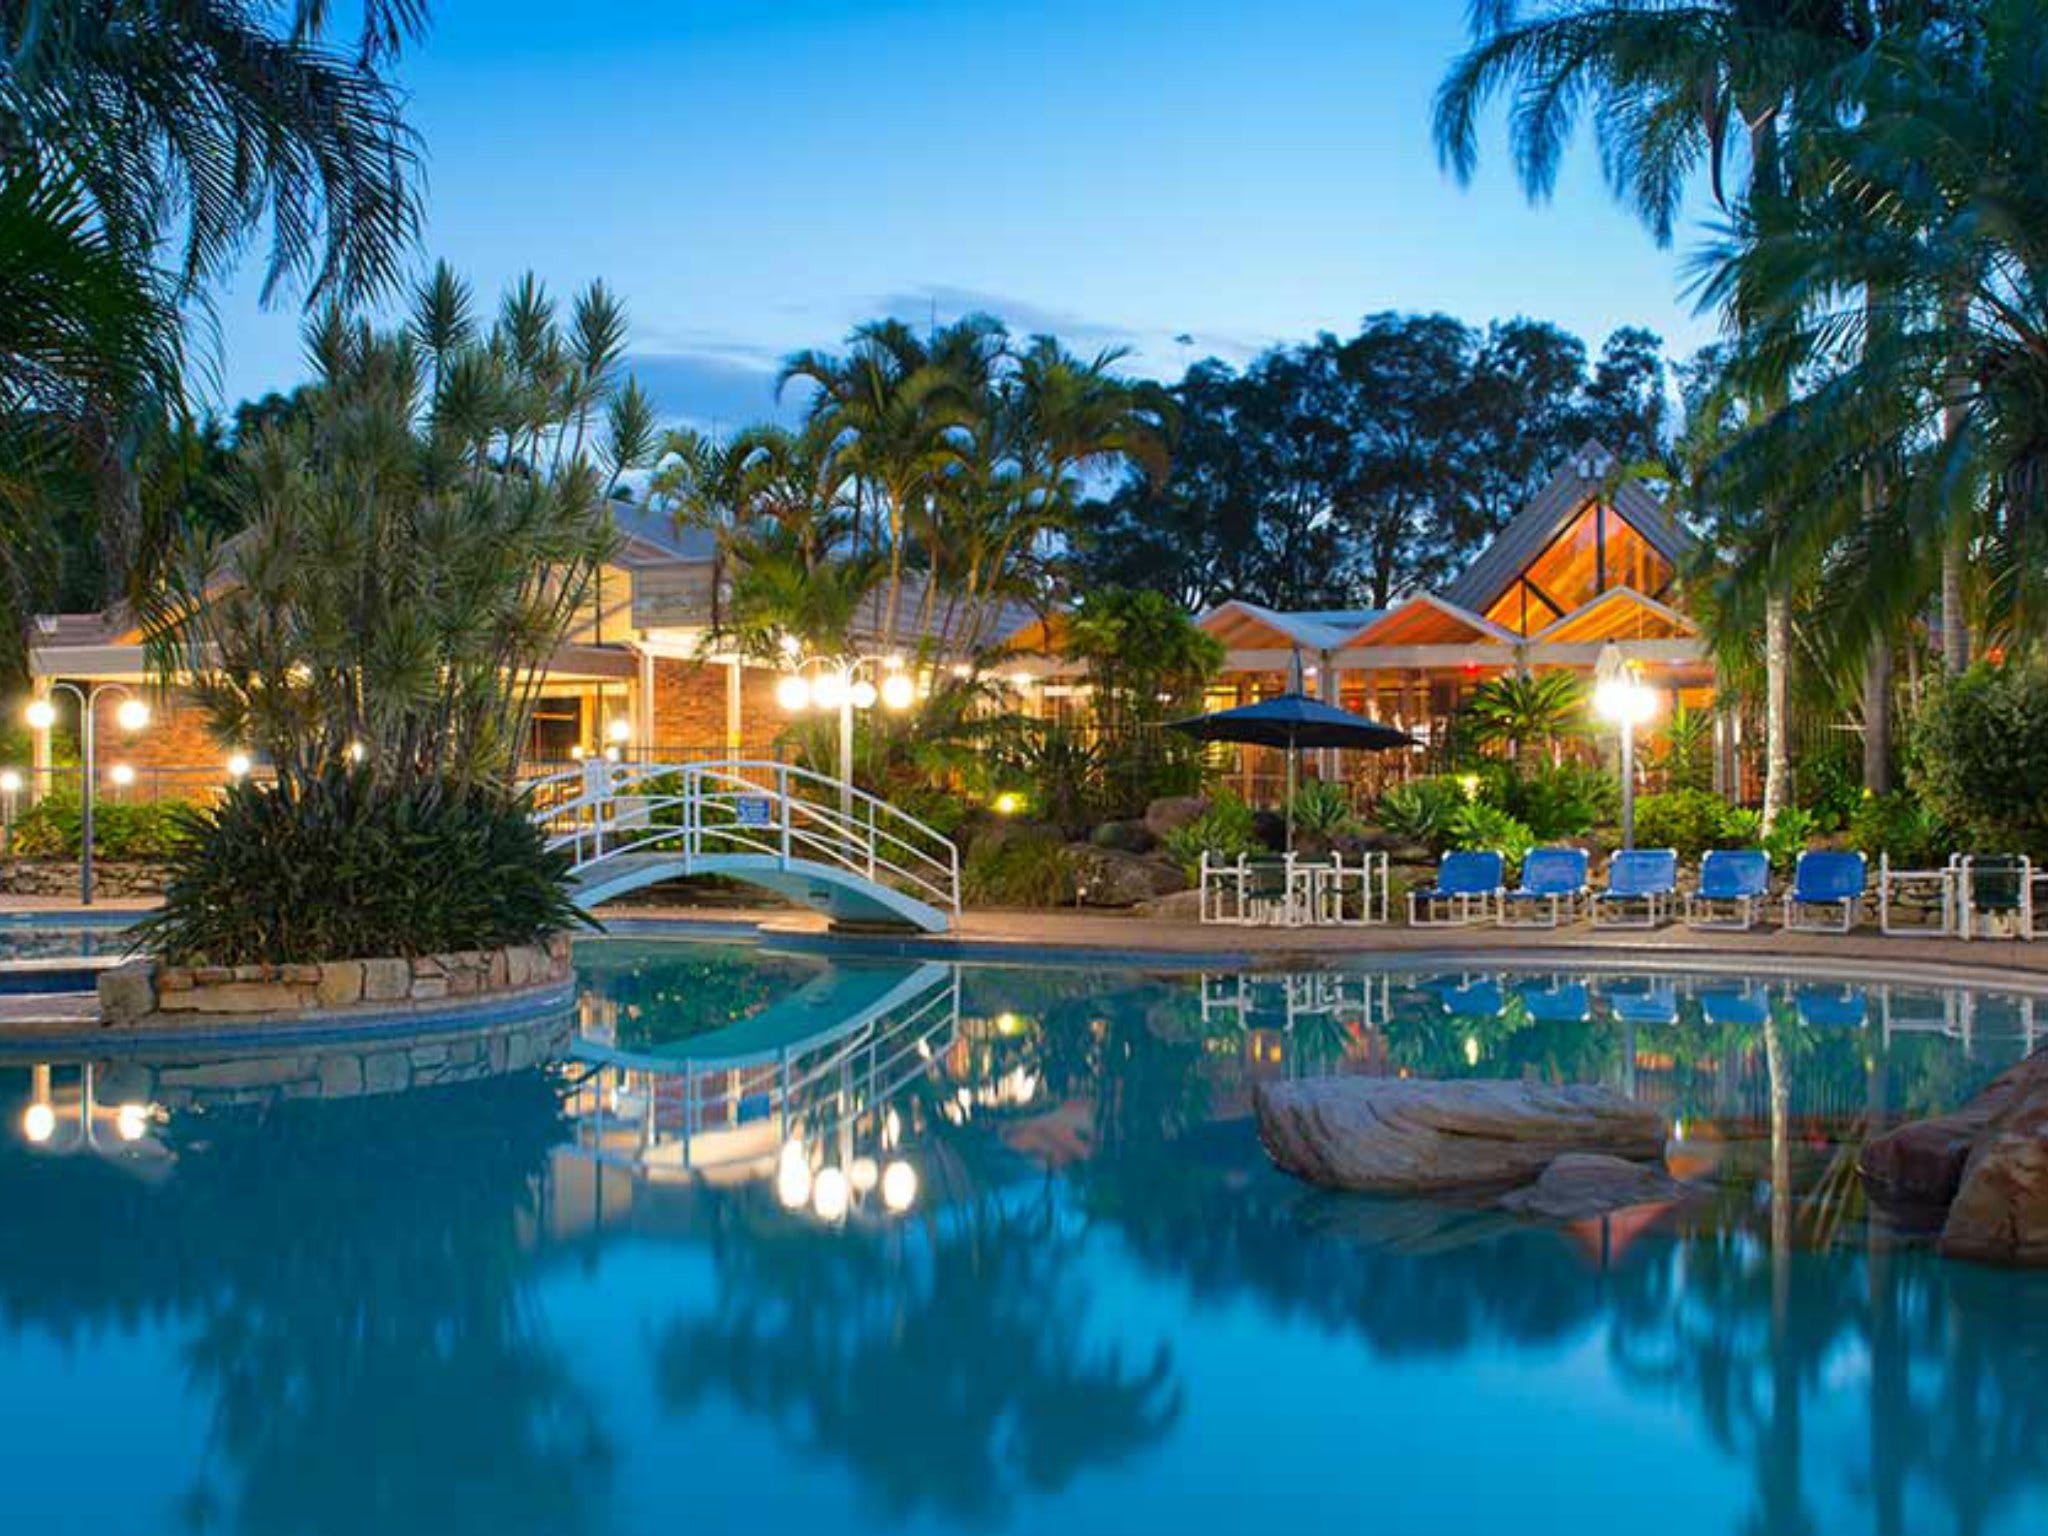 Boambee Bay Resort - Yamba Accommodation